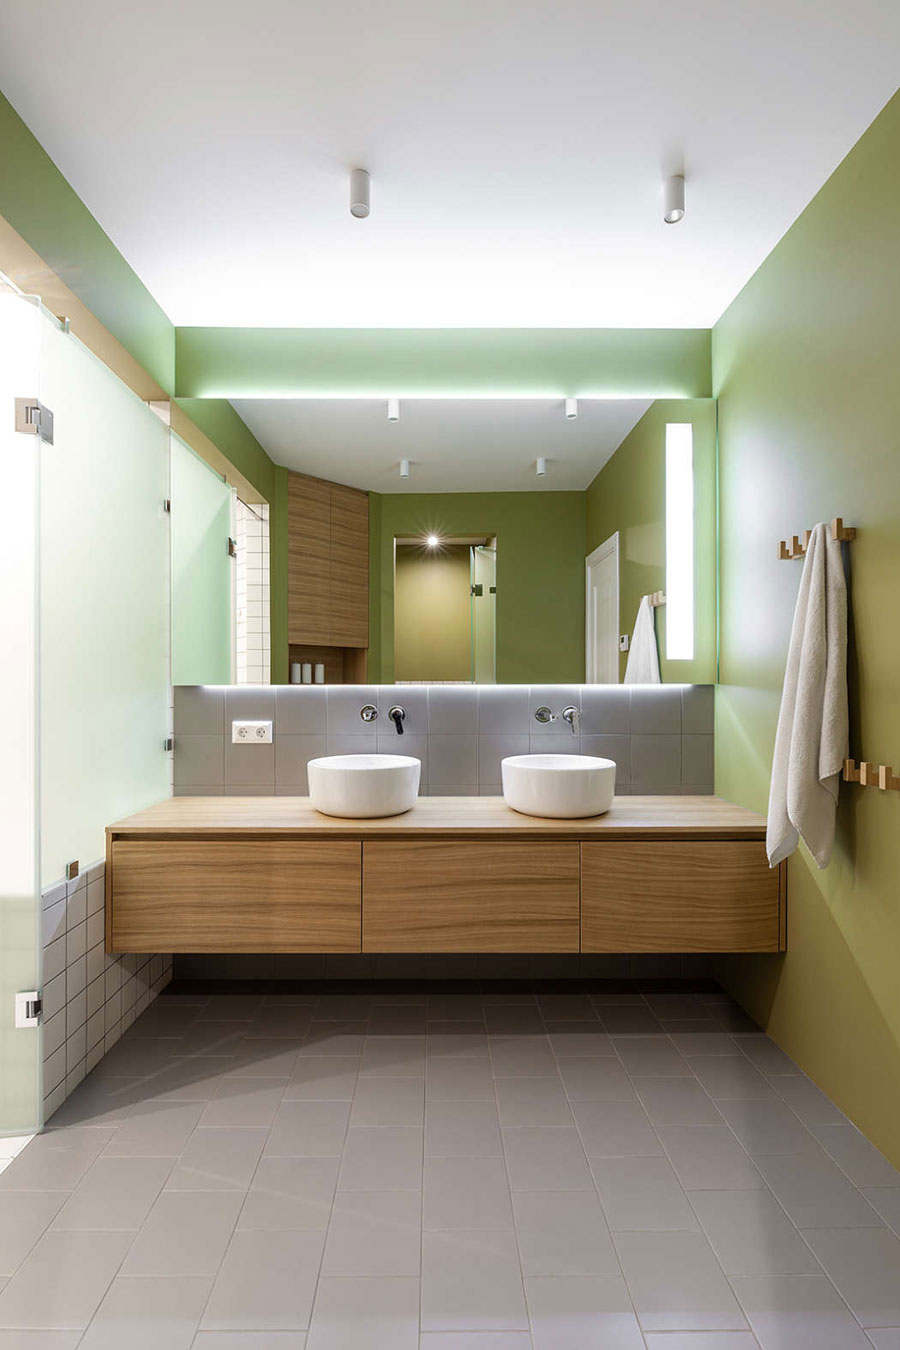 De twee zones in deze badkamer zijn ingericht met verschillende stijlen